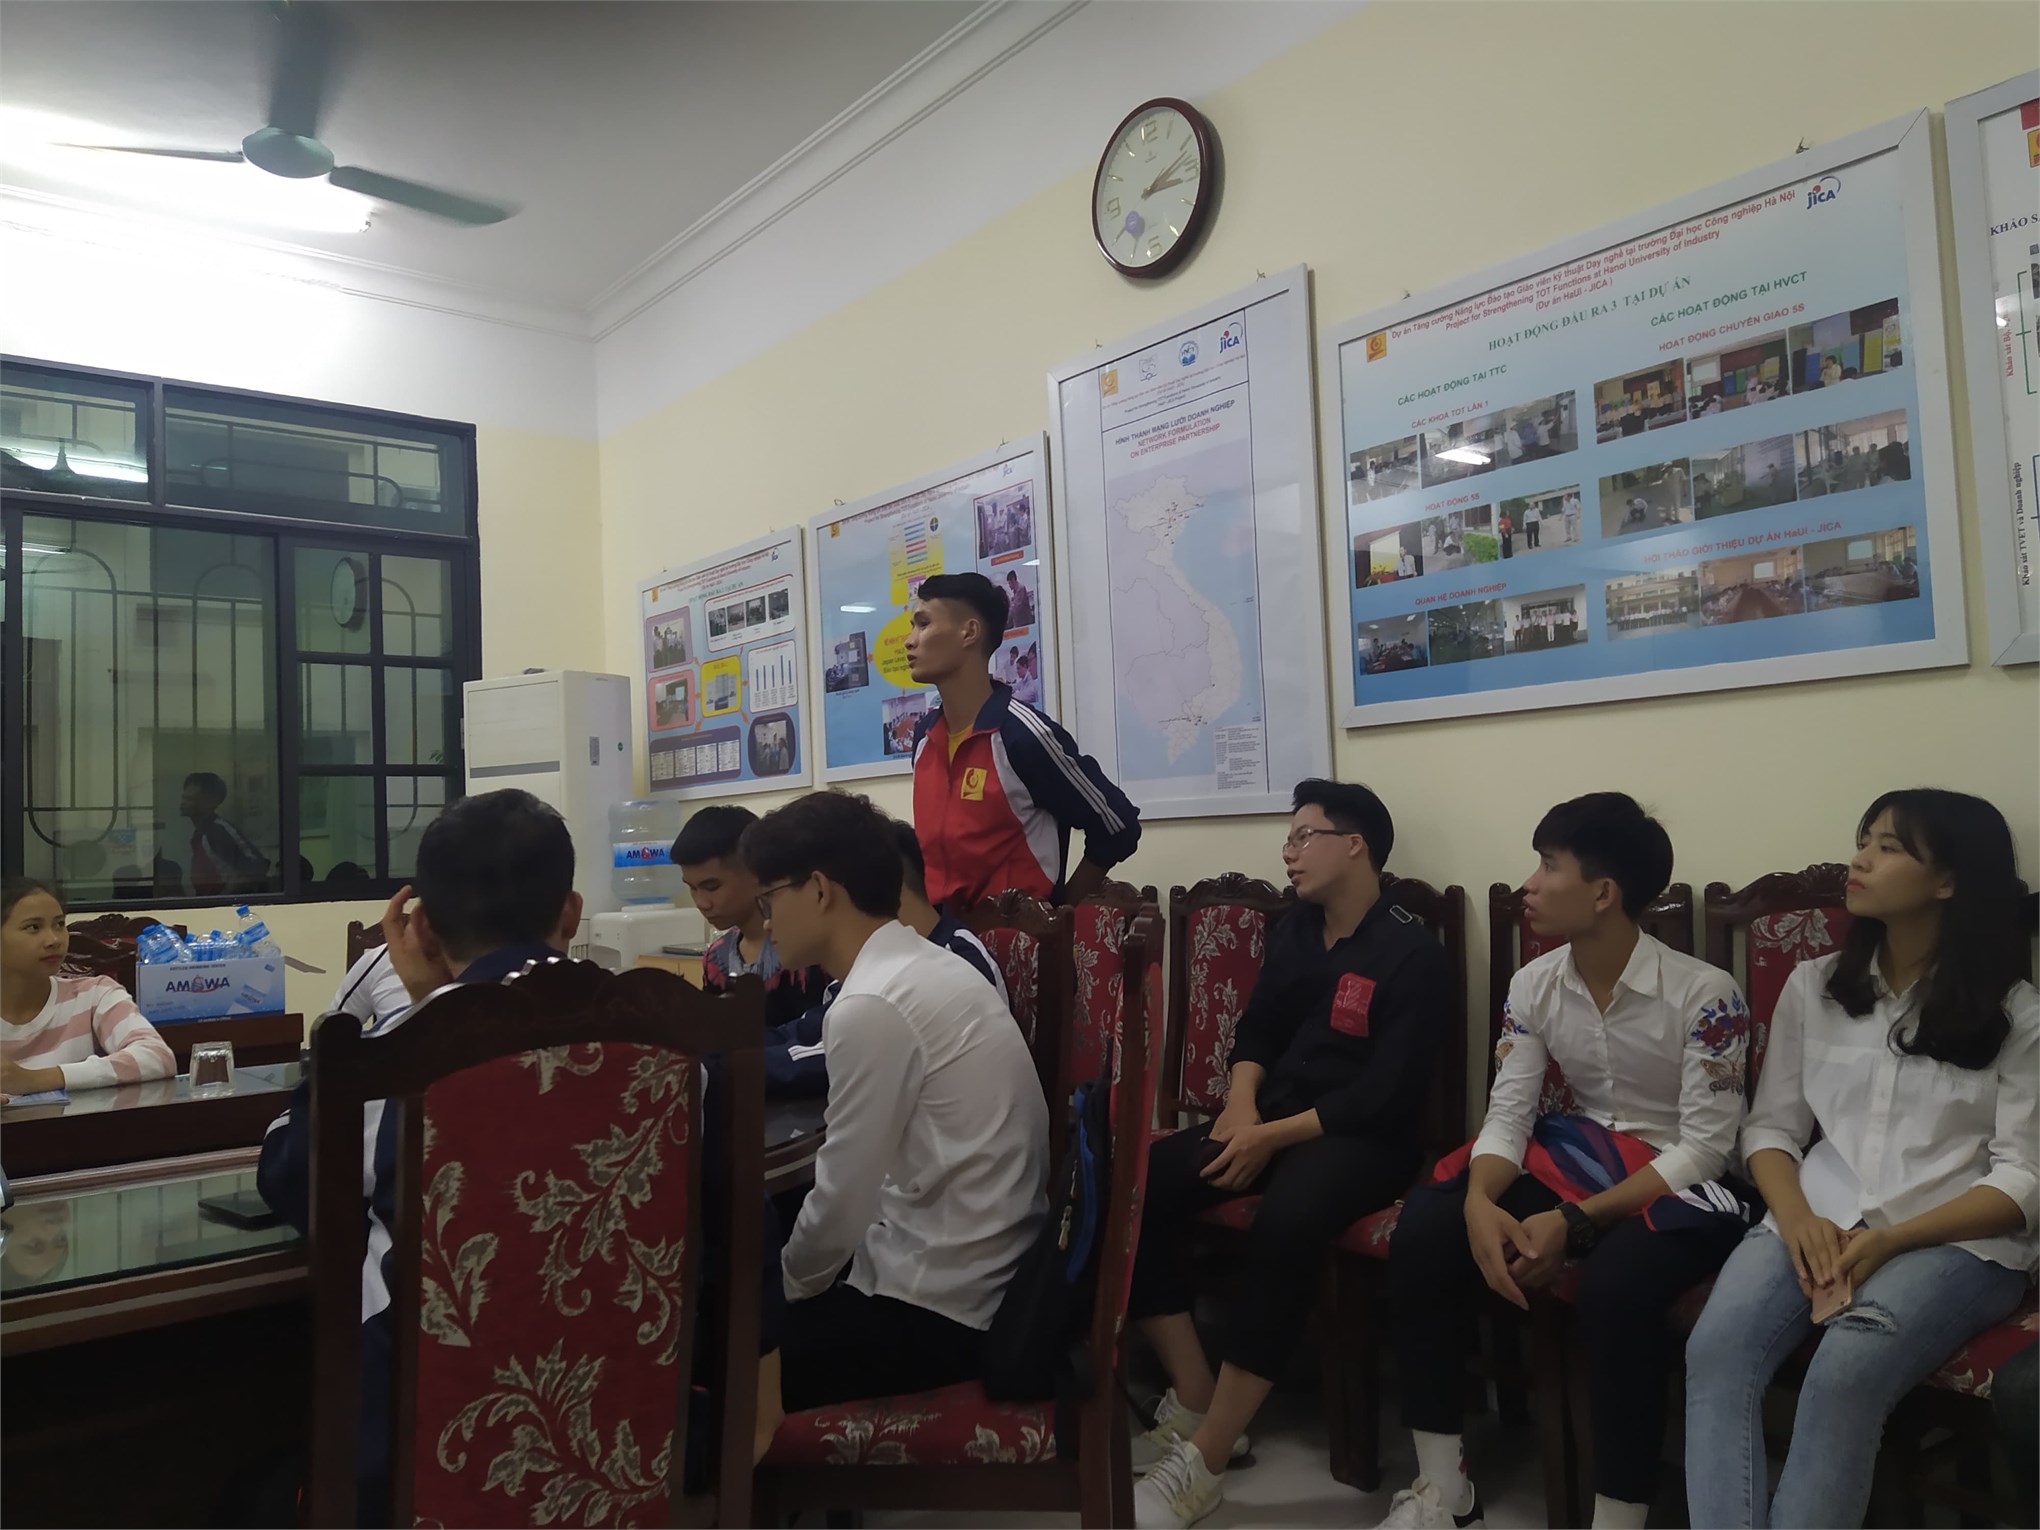 Trung tâm Việt Nhật tổ chức hội nghị Lớp trưởng – Bí thư chi đoàn năm học 2019 – 2020